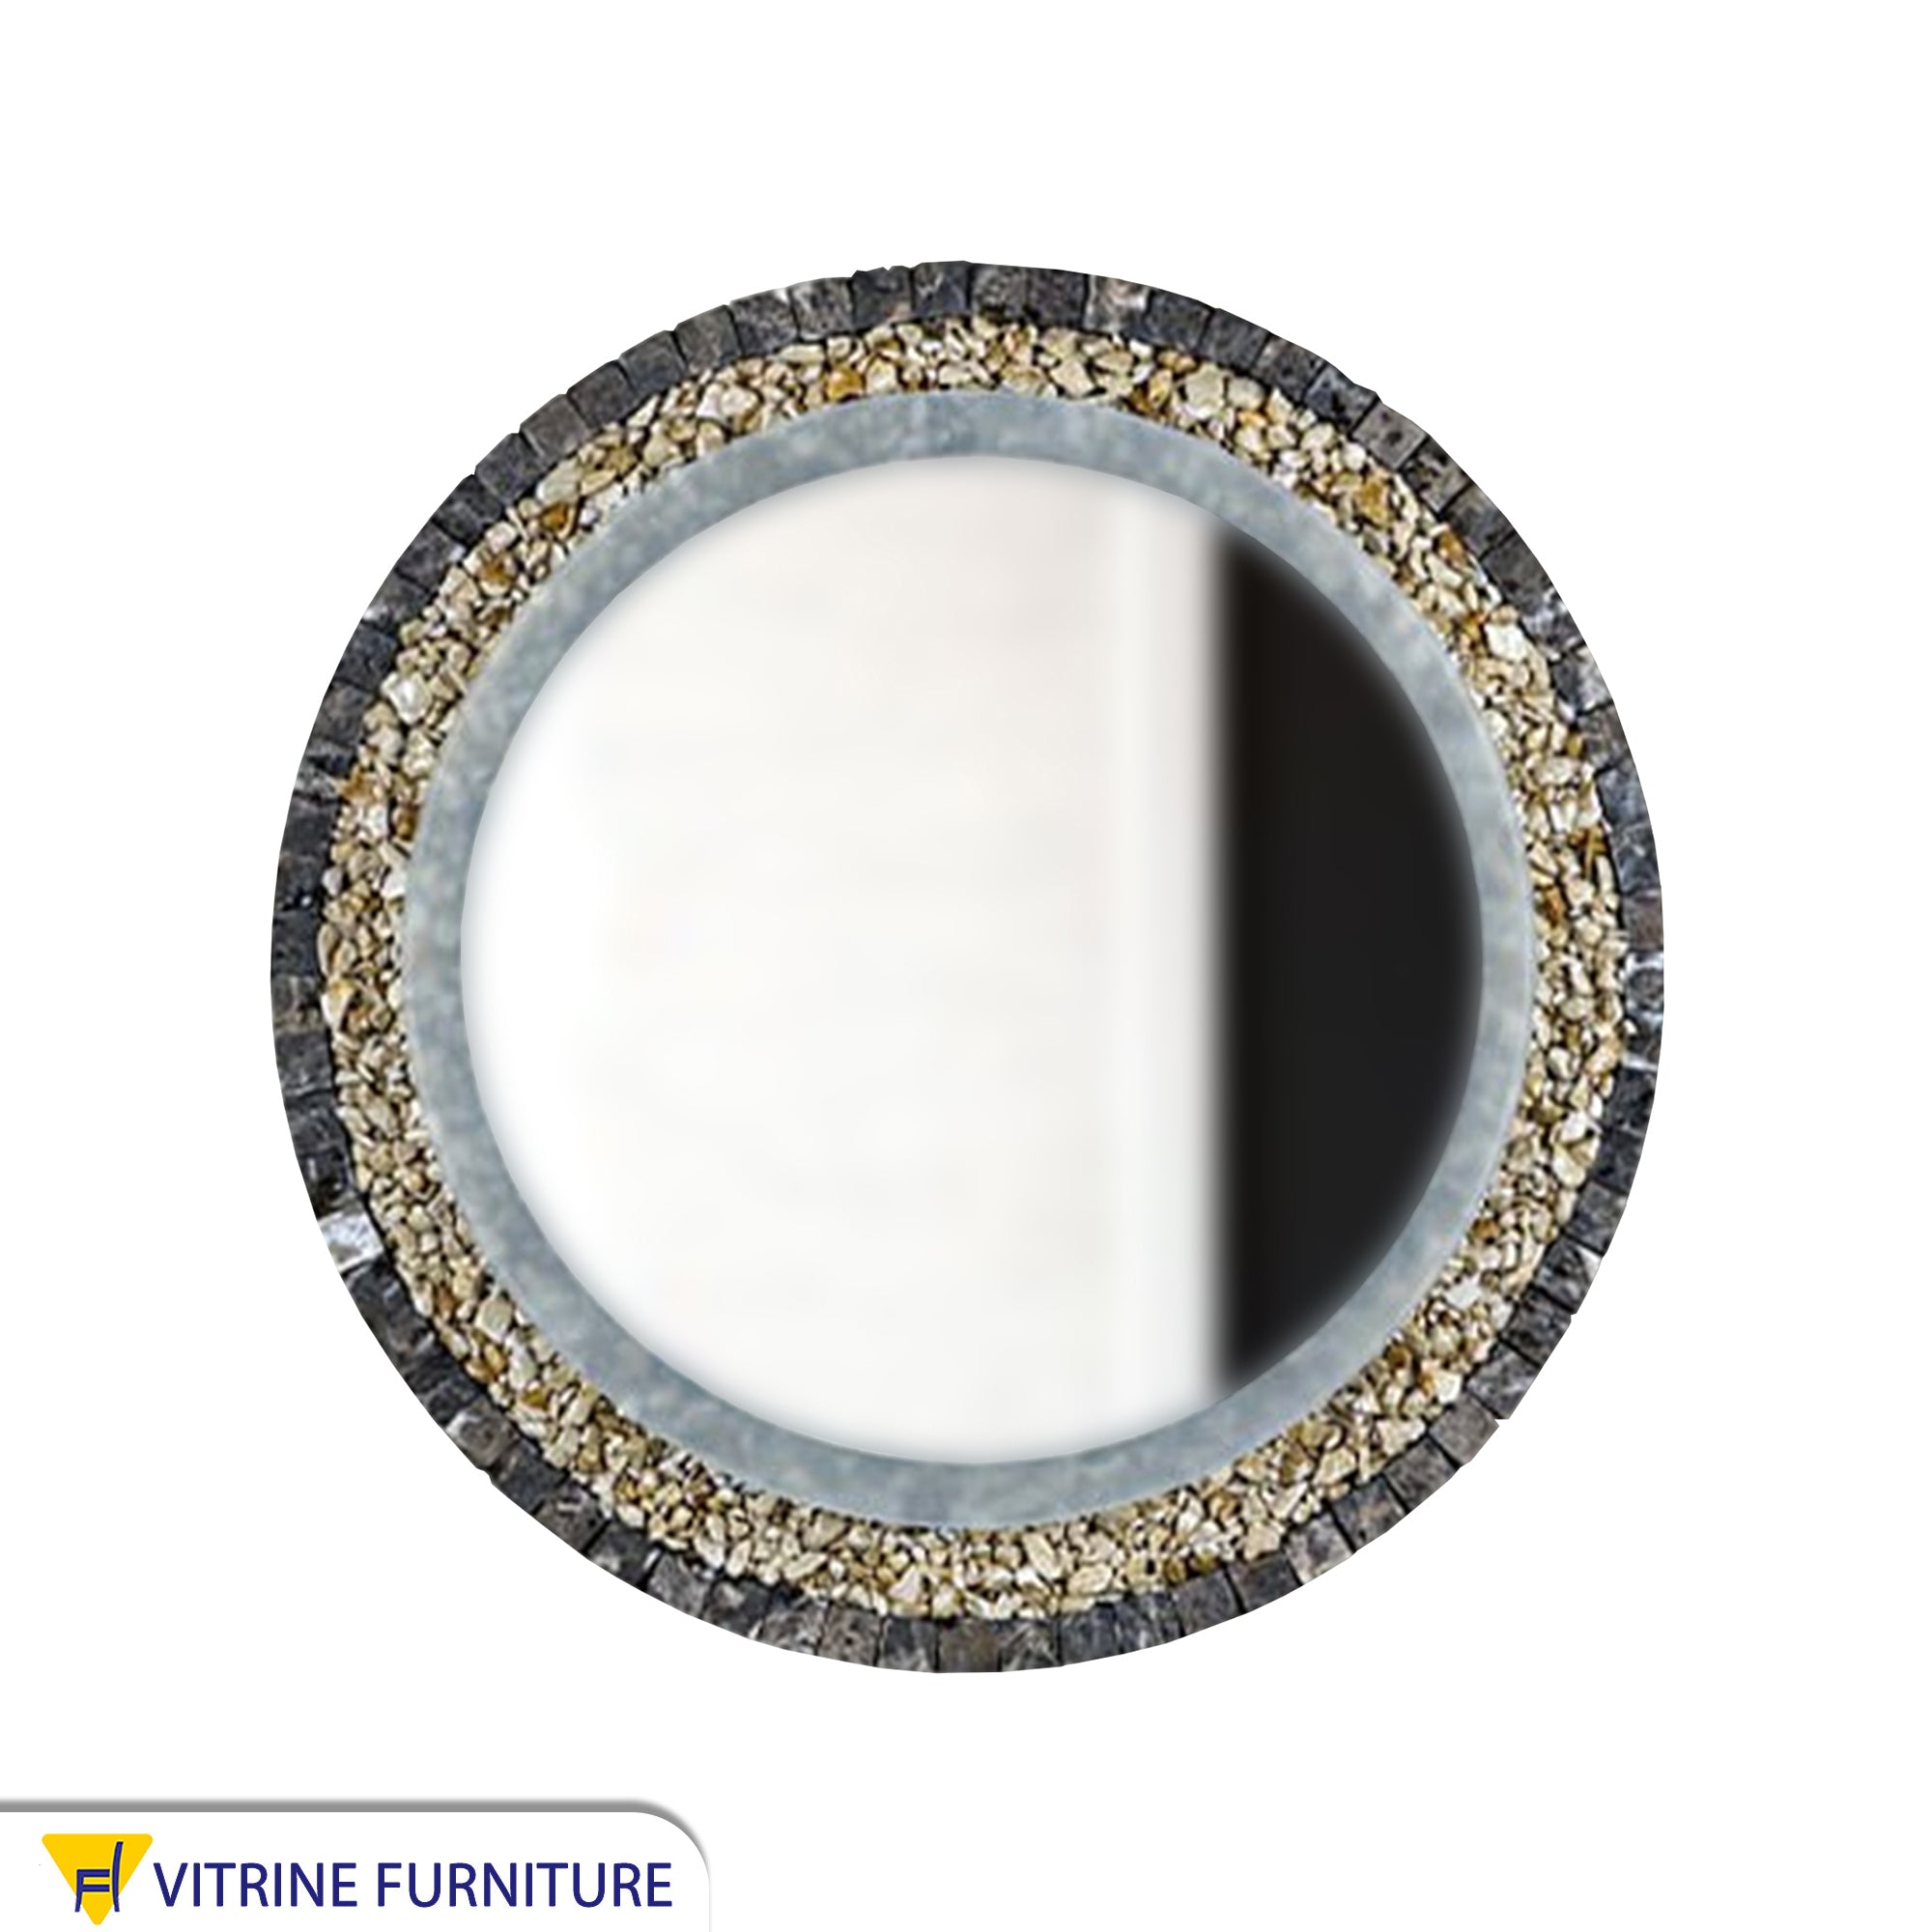 مرآة دائرية بإطار من الرخام الأسود والحجر